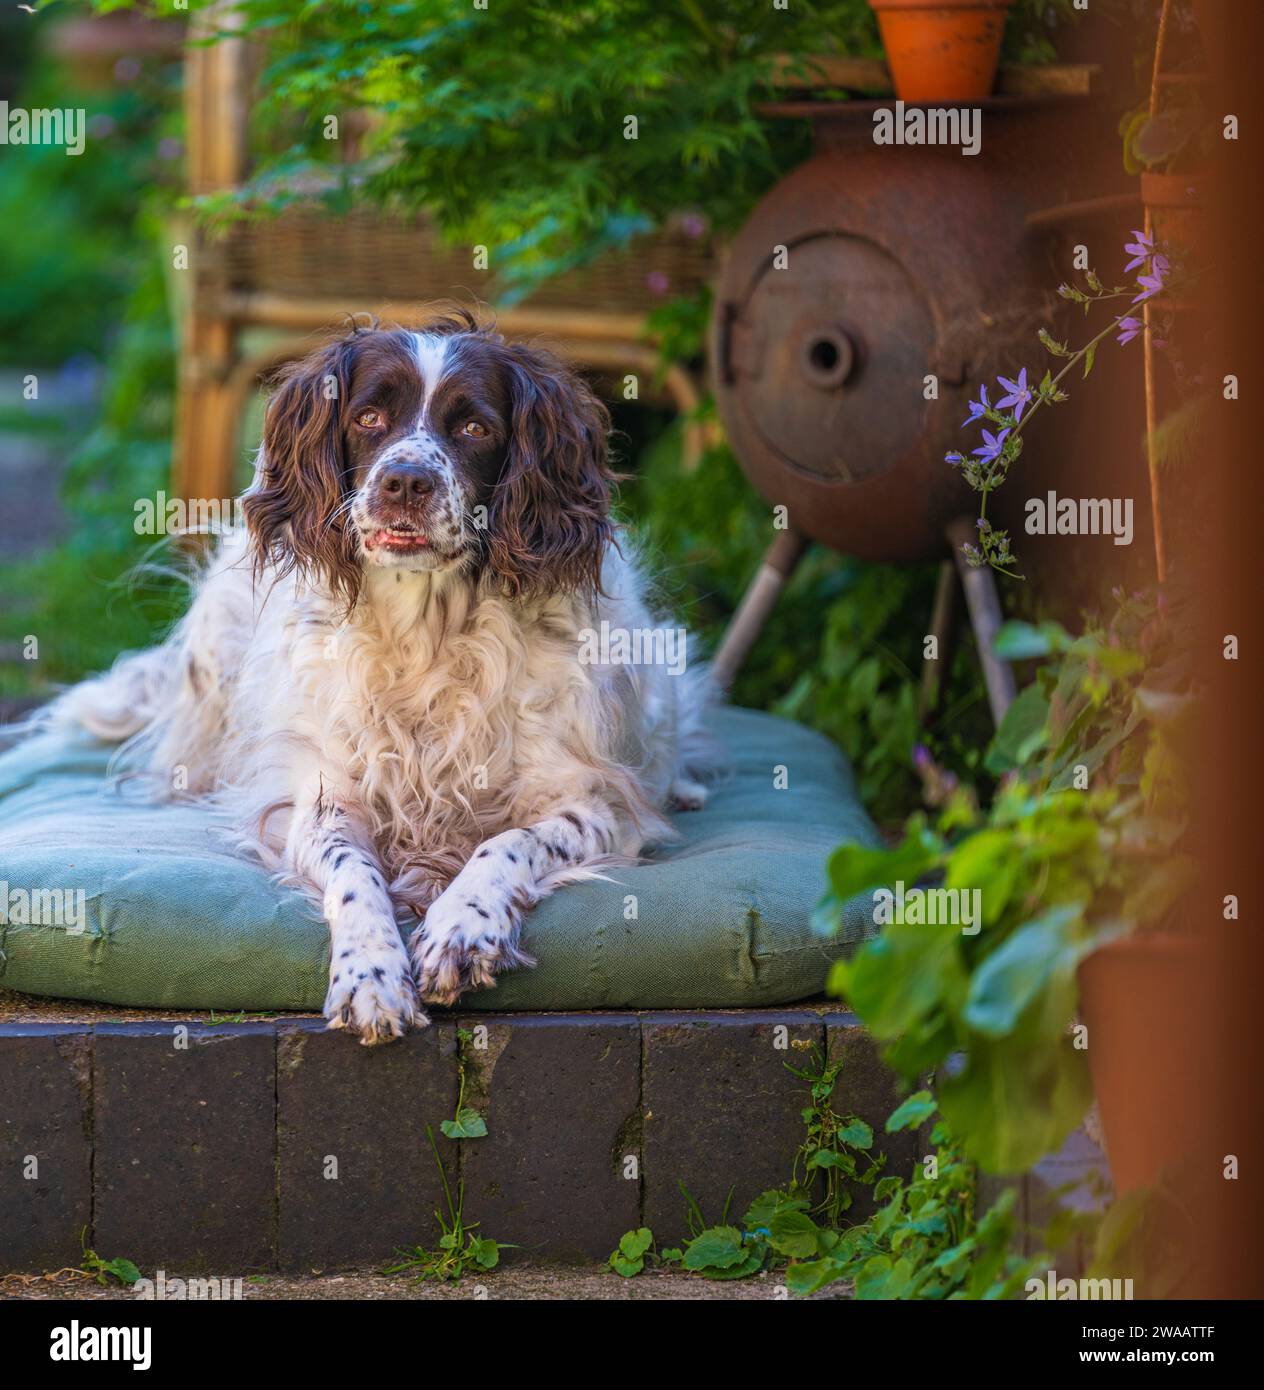 Un vieux chien Springer Spaniel anglais s'est assis sur son lit dans un jardin cottage par une journée d'été chaude et ensoleillée Banque D'Images